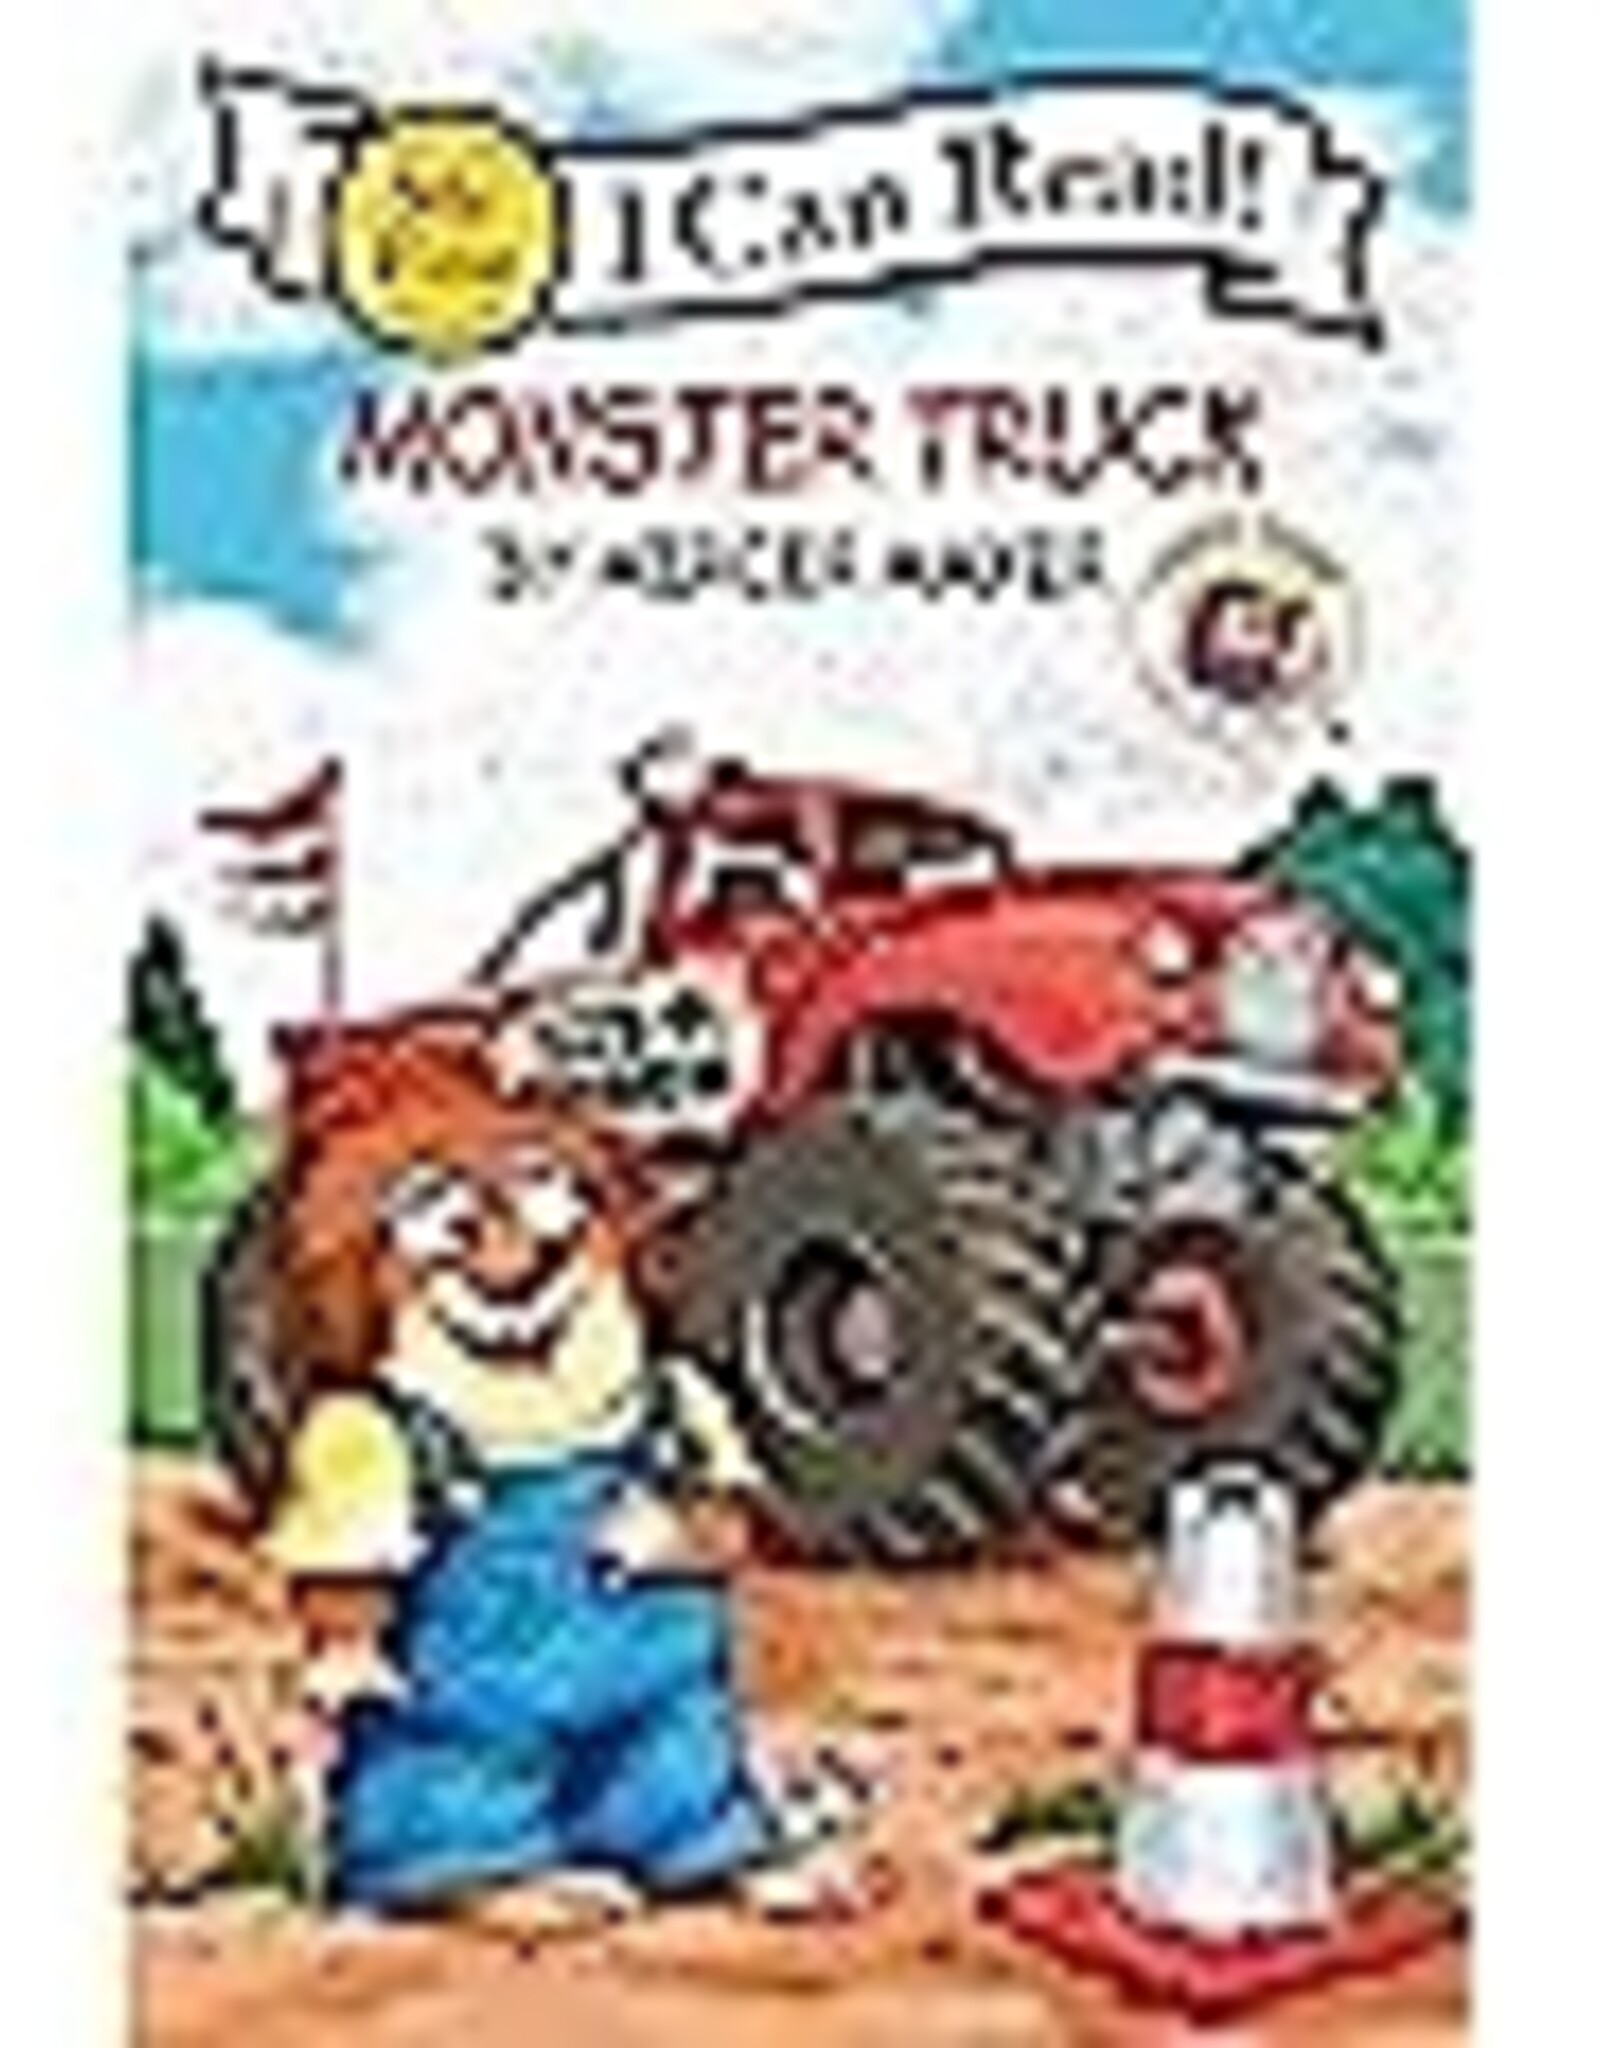 Harper Collins ICR Little Critter: Monster Truck